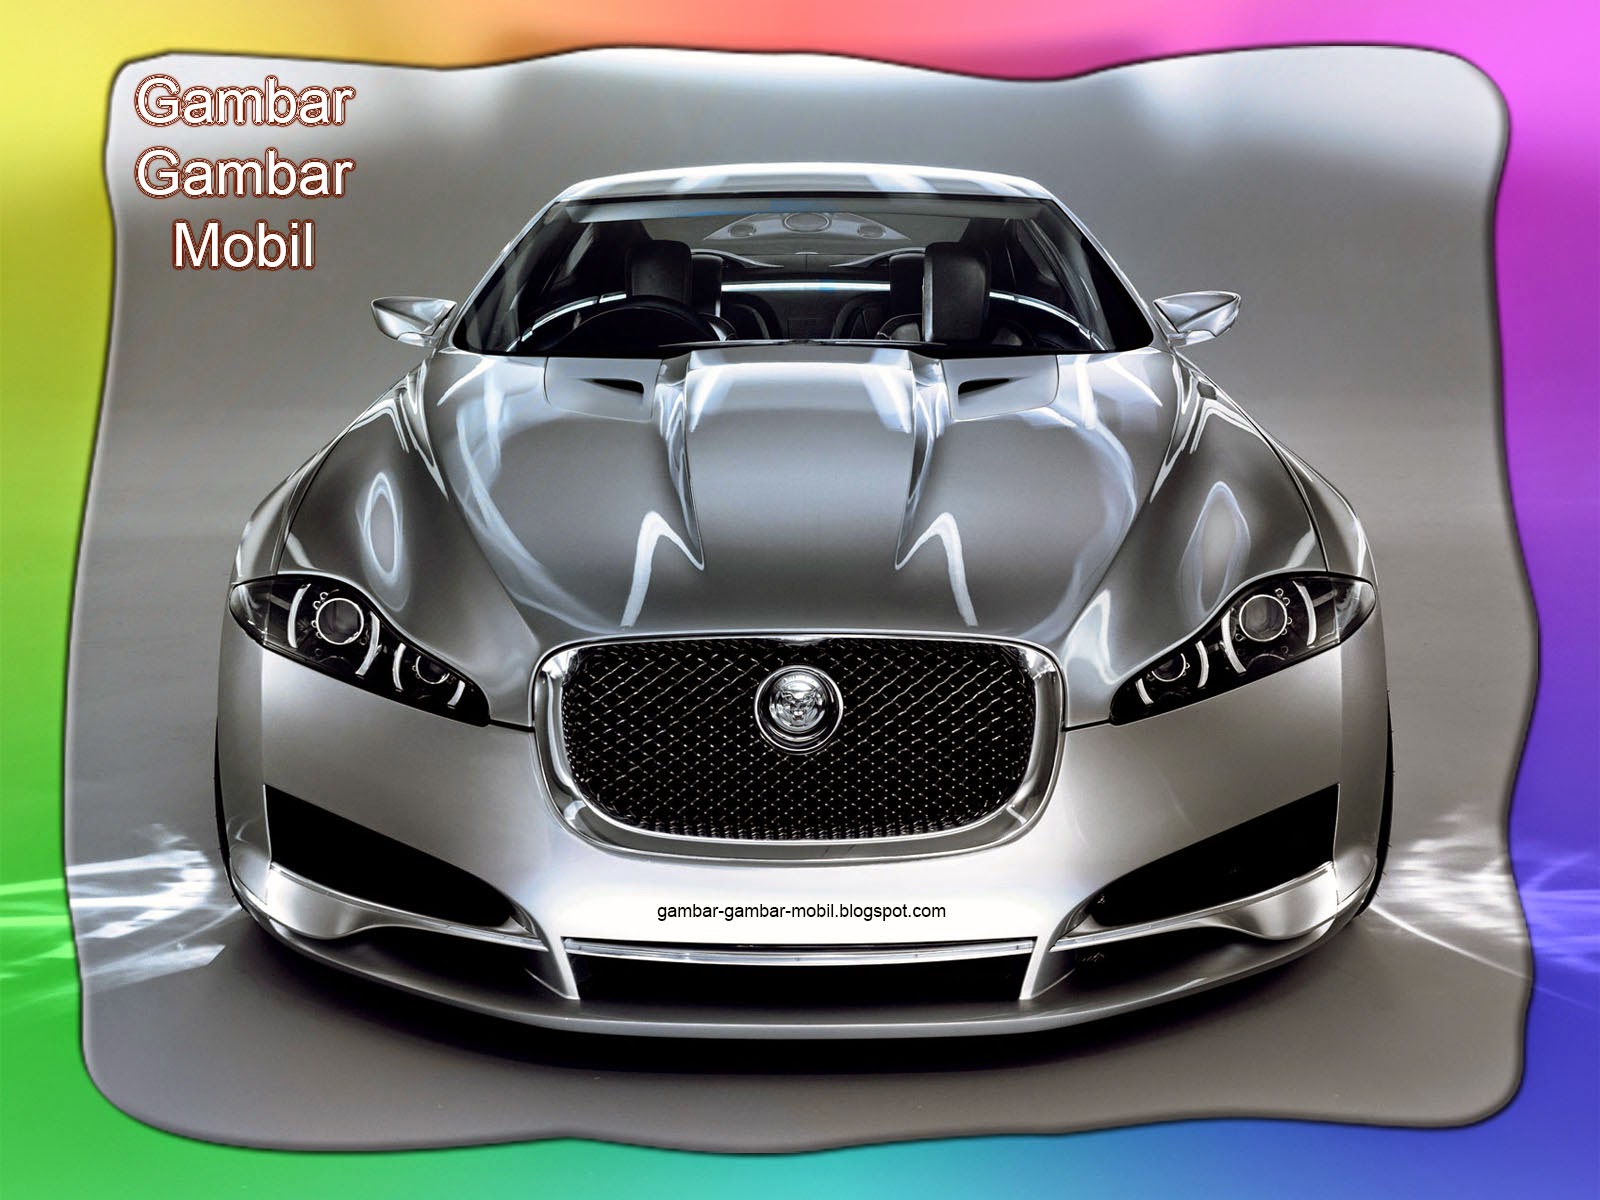 Gambar mobil jaguar - Gambar Gambar Mobil